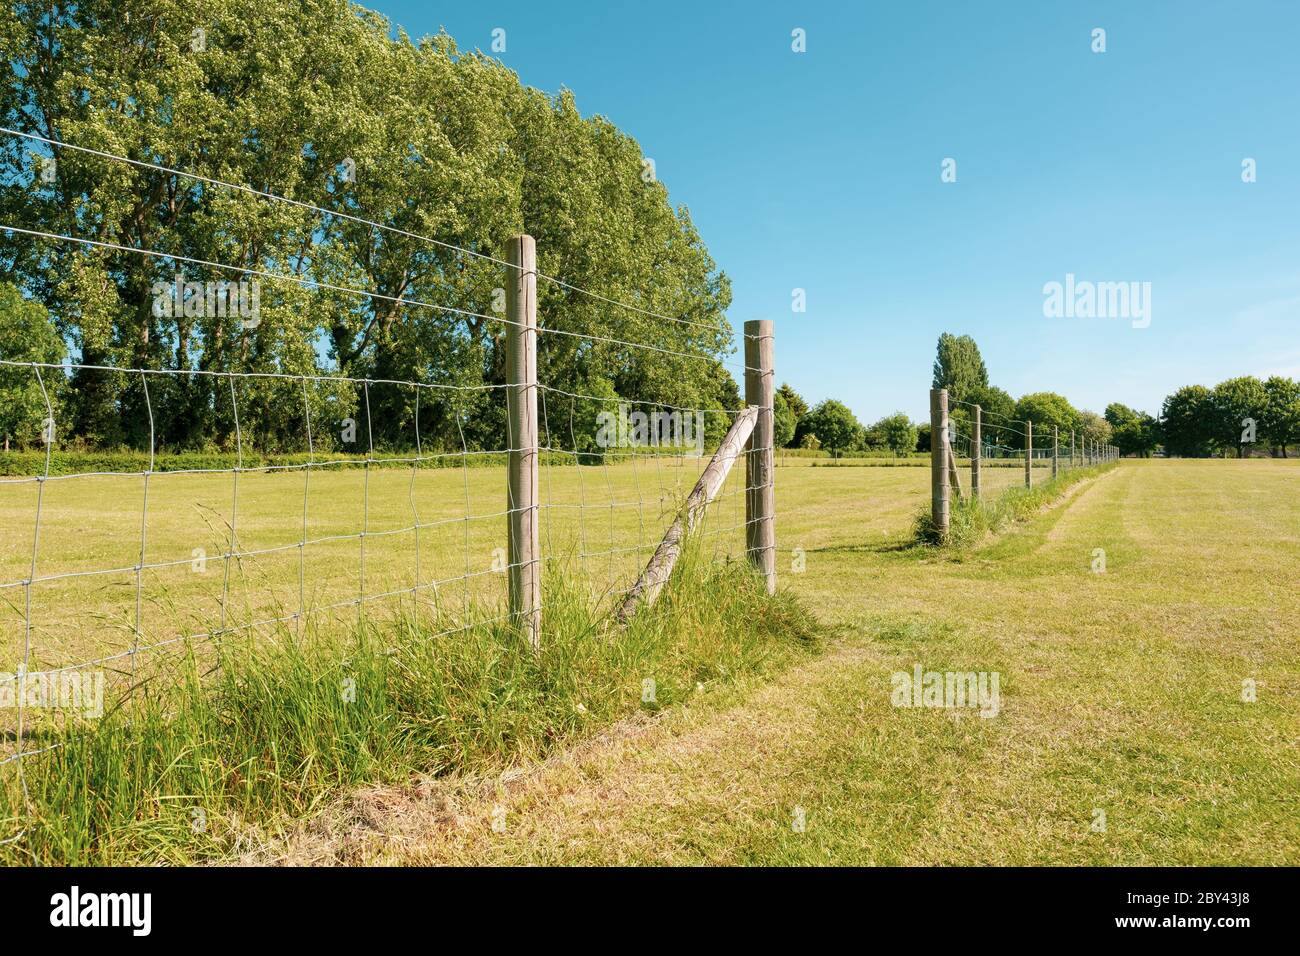 Abgesperrte Abschnitt eines Dorfes Park und grün, Teil eines Naturschutzgebietes. Ein gemähtes Dorf Sportplatz und Distanz Fußballtor kann gesehen werden. Stockfoto